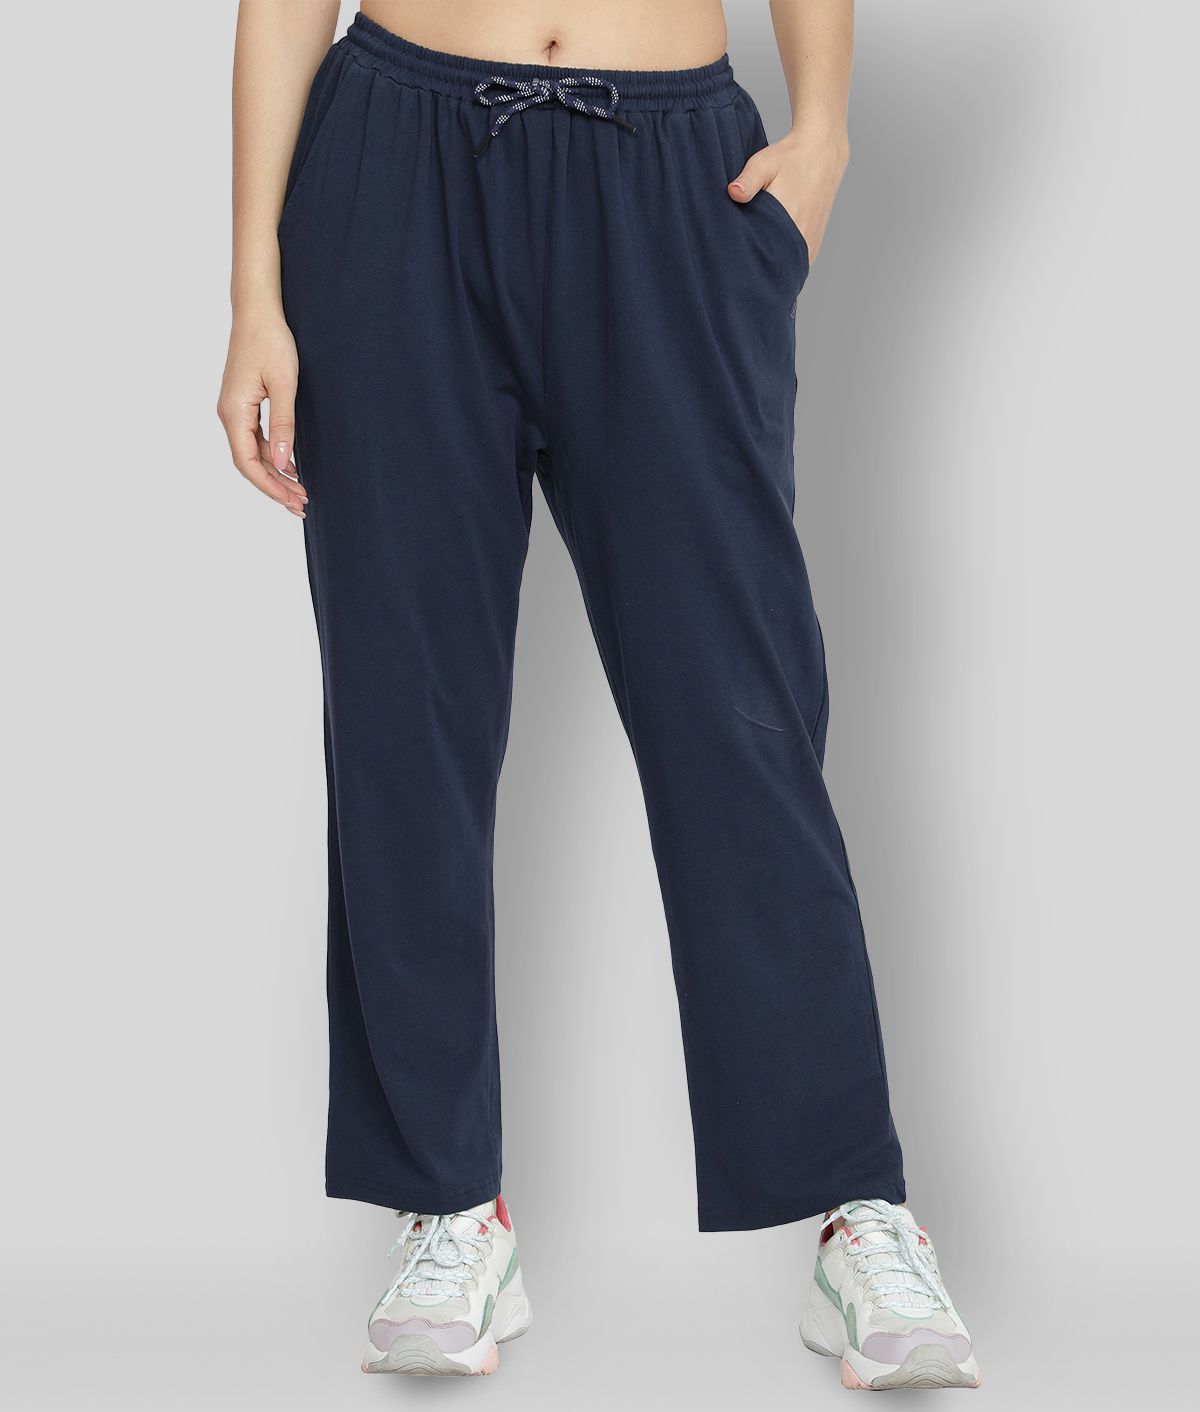     			NUEVOSDAMAS - Blue Cotton Women's Nightwear Pajamas ( Pack of 1 )